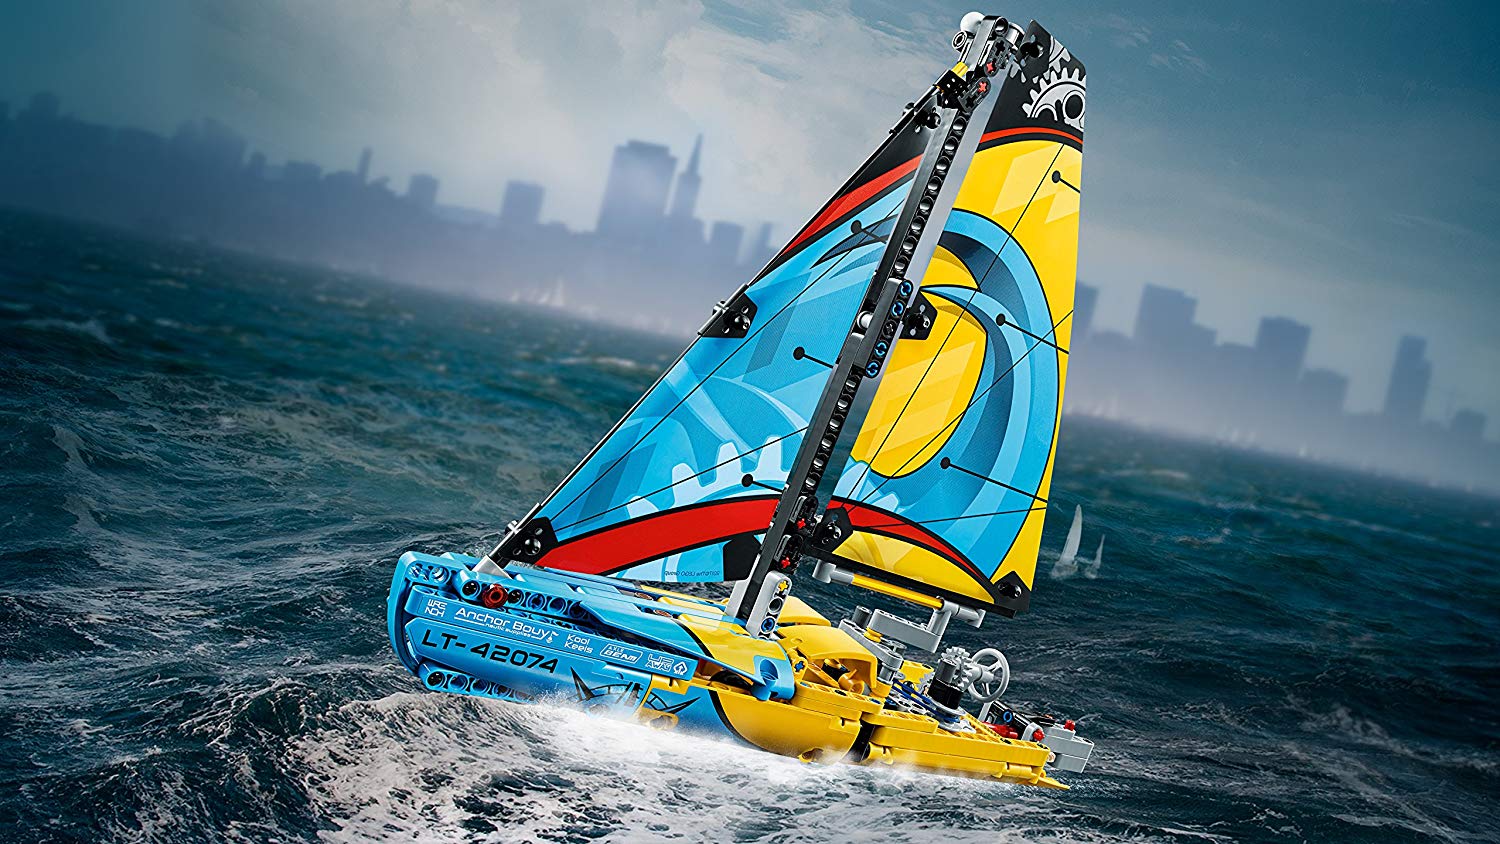 lego technic racing yacht 42074